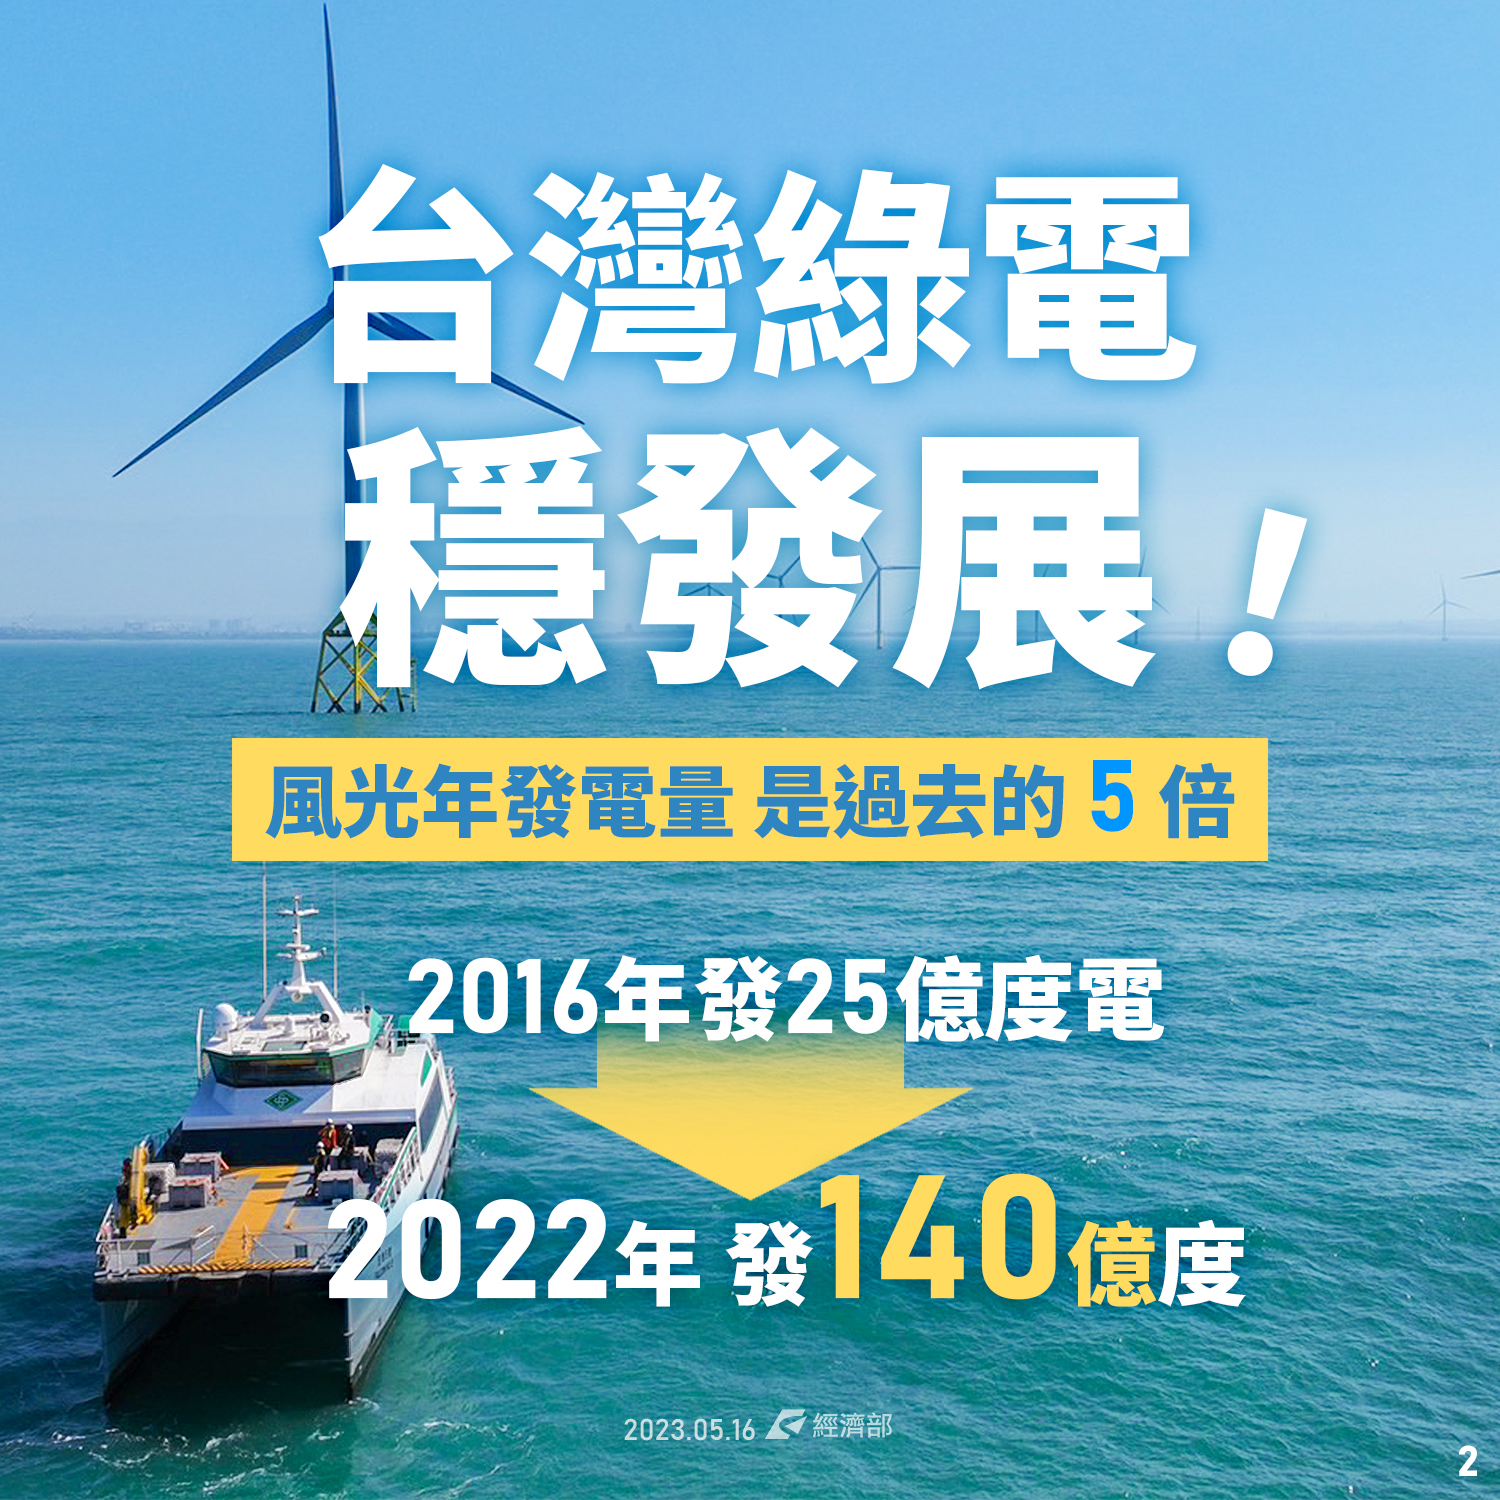 台灣綠電穩發展 風光年發電量 是過去的5倍